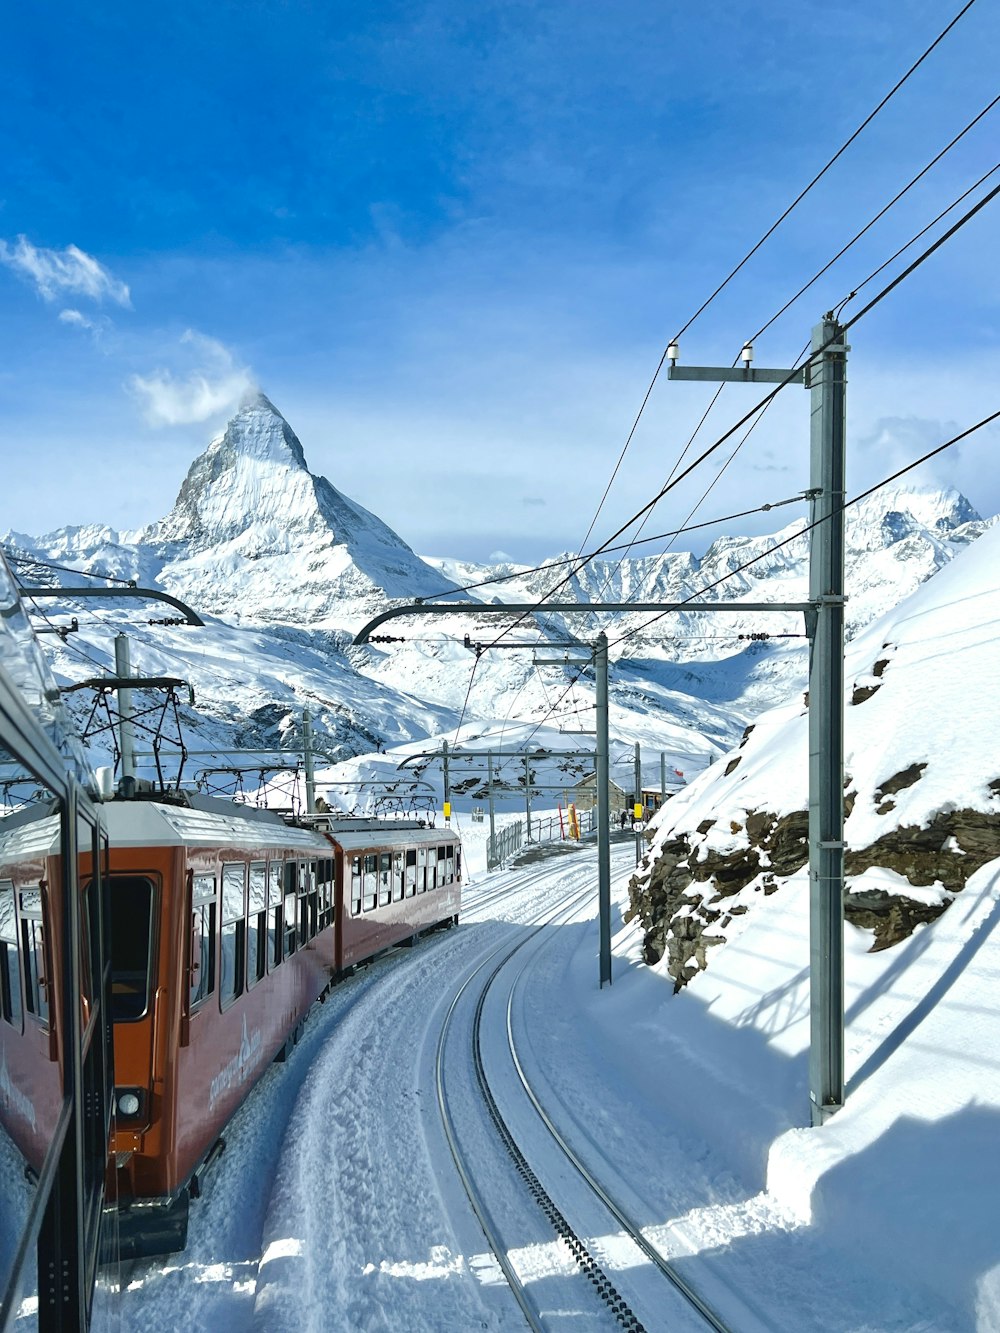 Un treno rosso che viaggia lungo i binari accanto a una montagna innevata